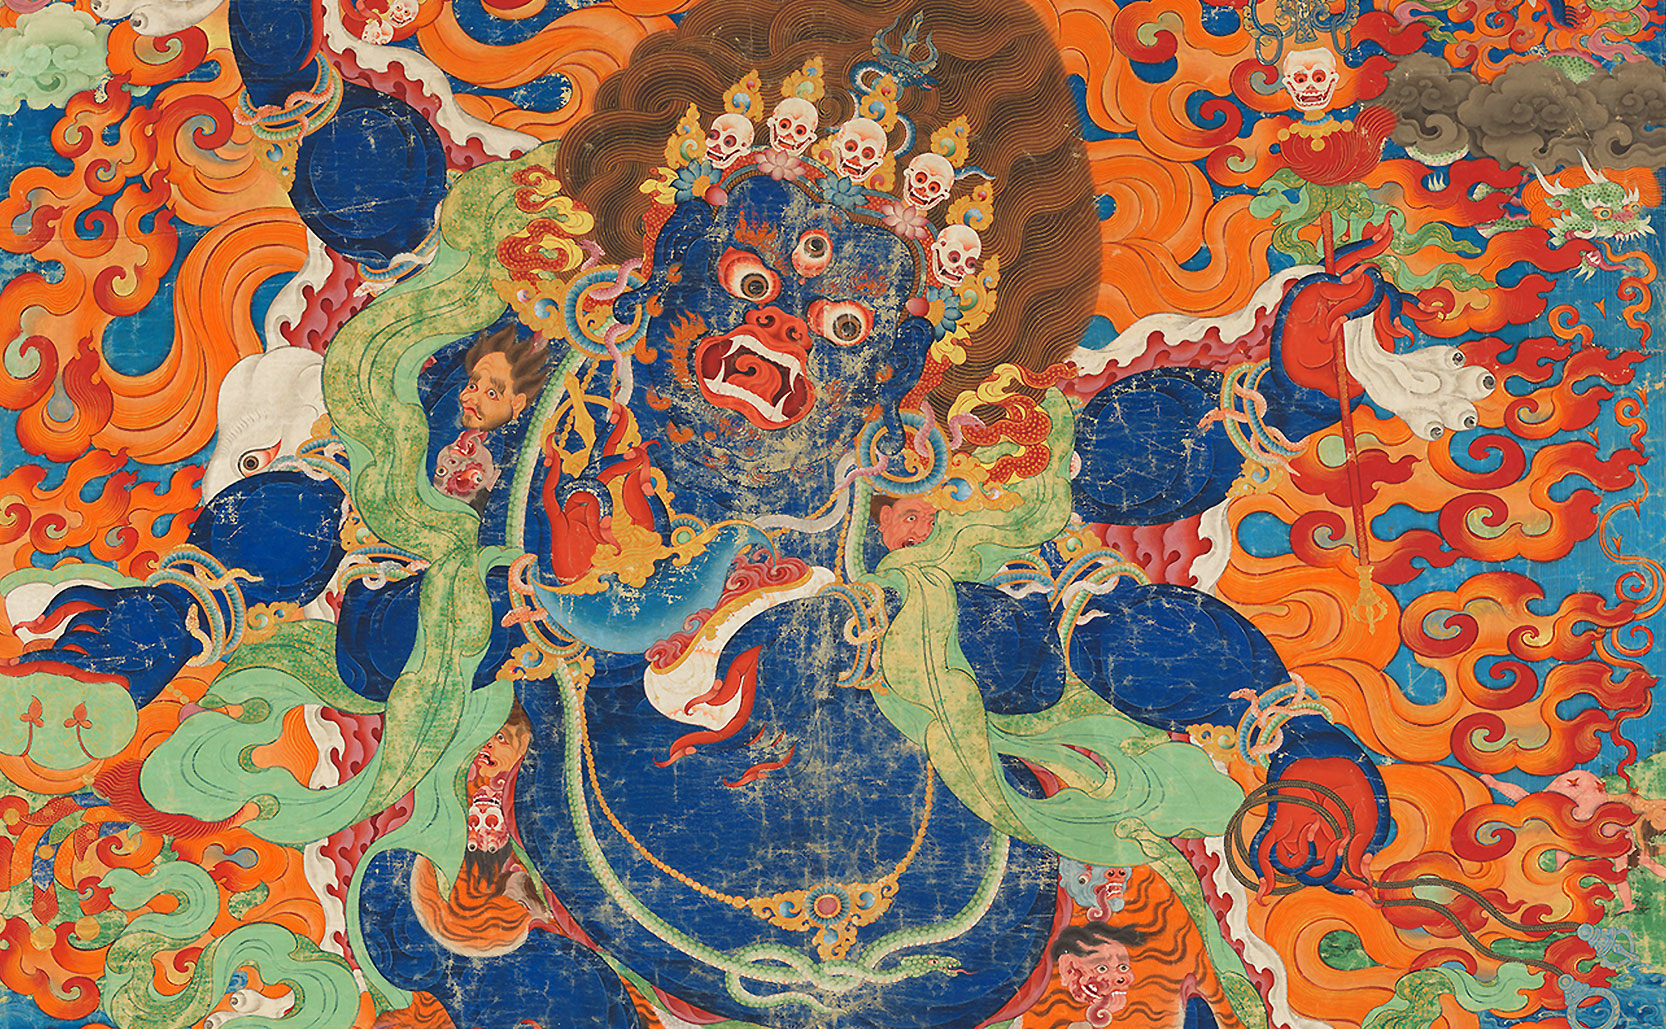 a detail of a Palden Lhamo illustration